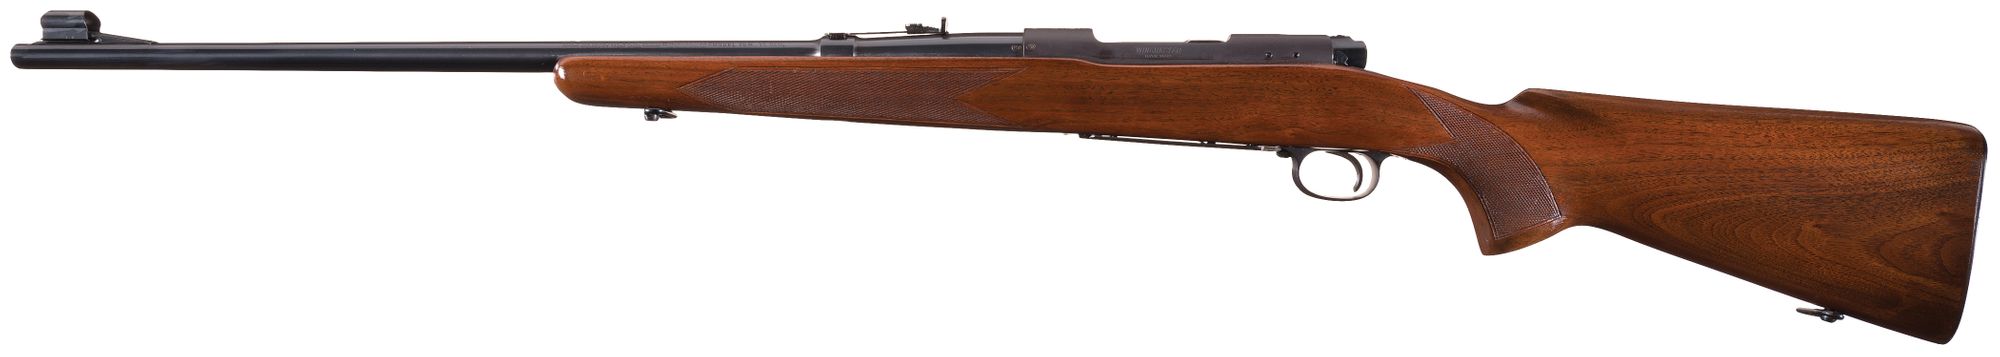 Pre-64 Winchester Model 70 in 35 Remington Caliber